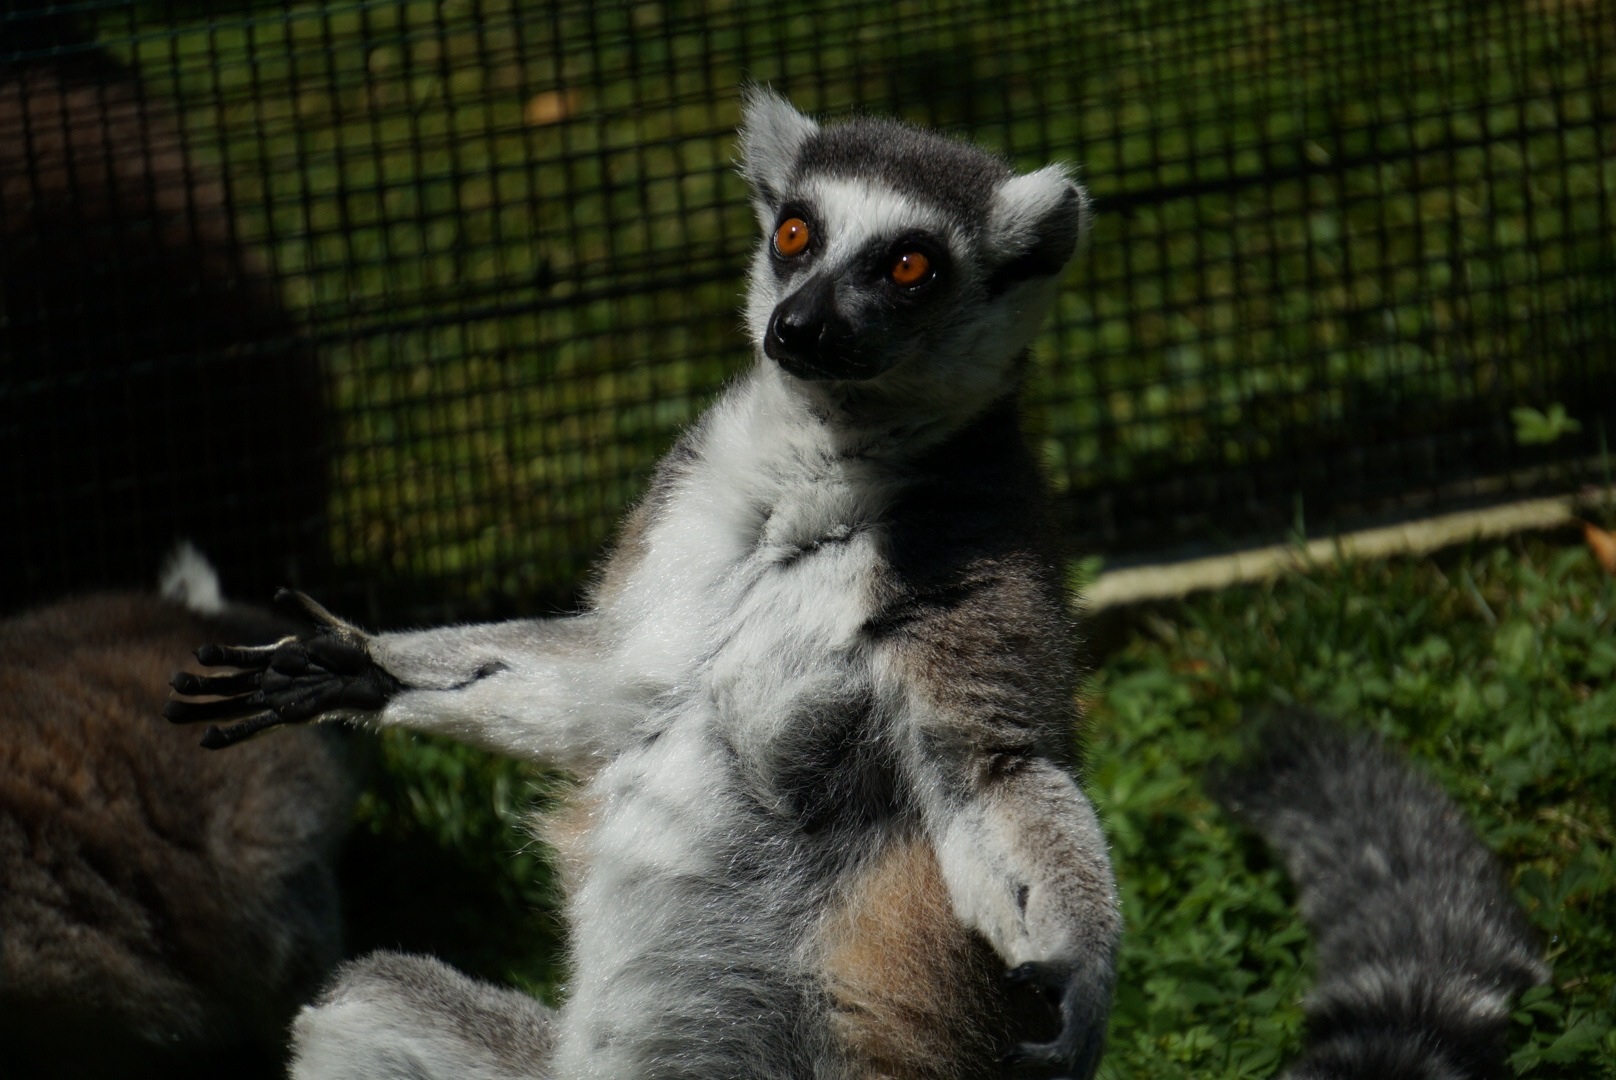 Lemur...